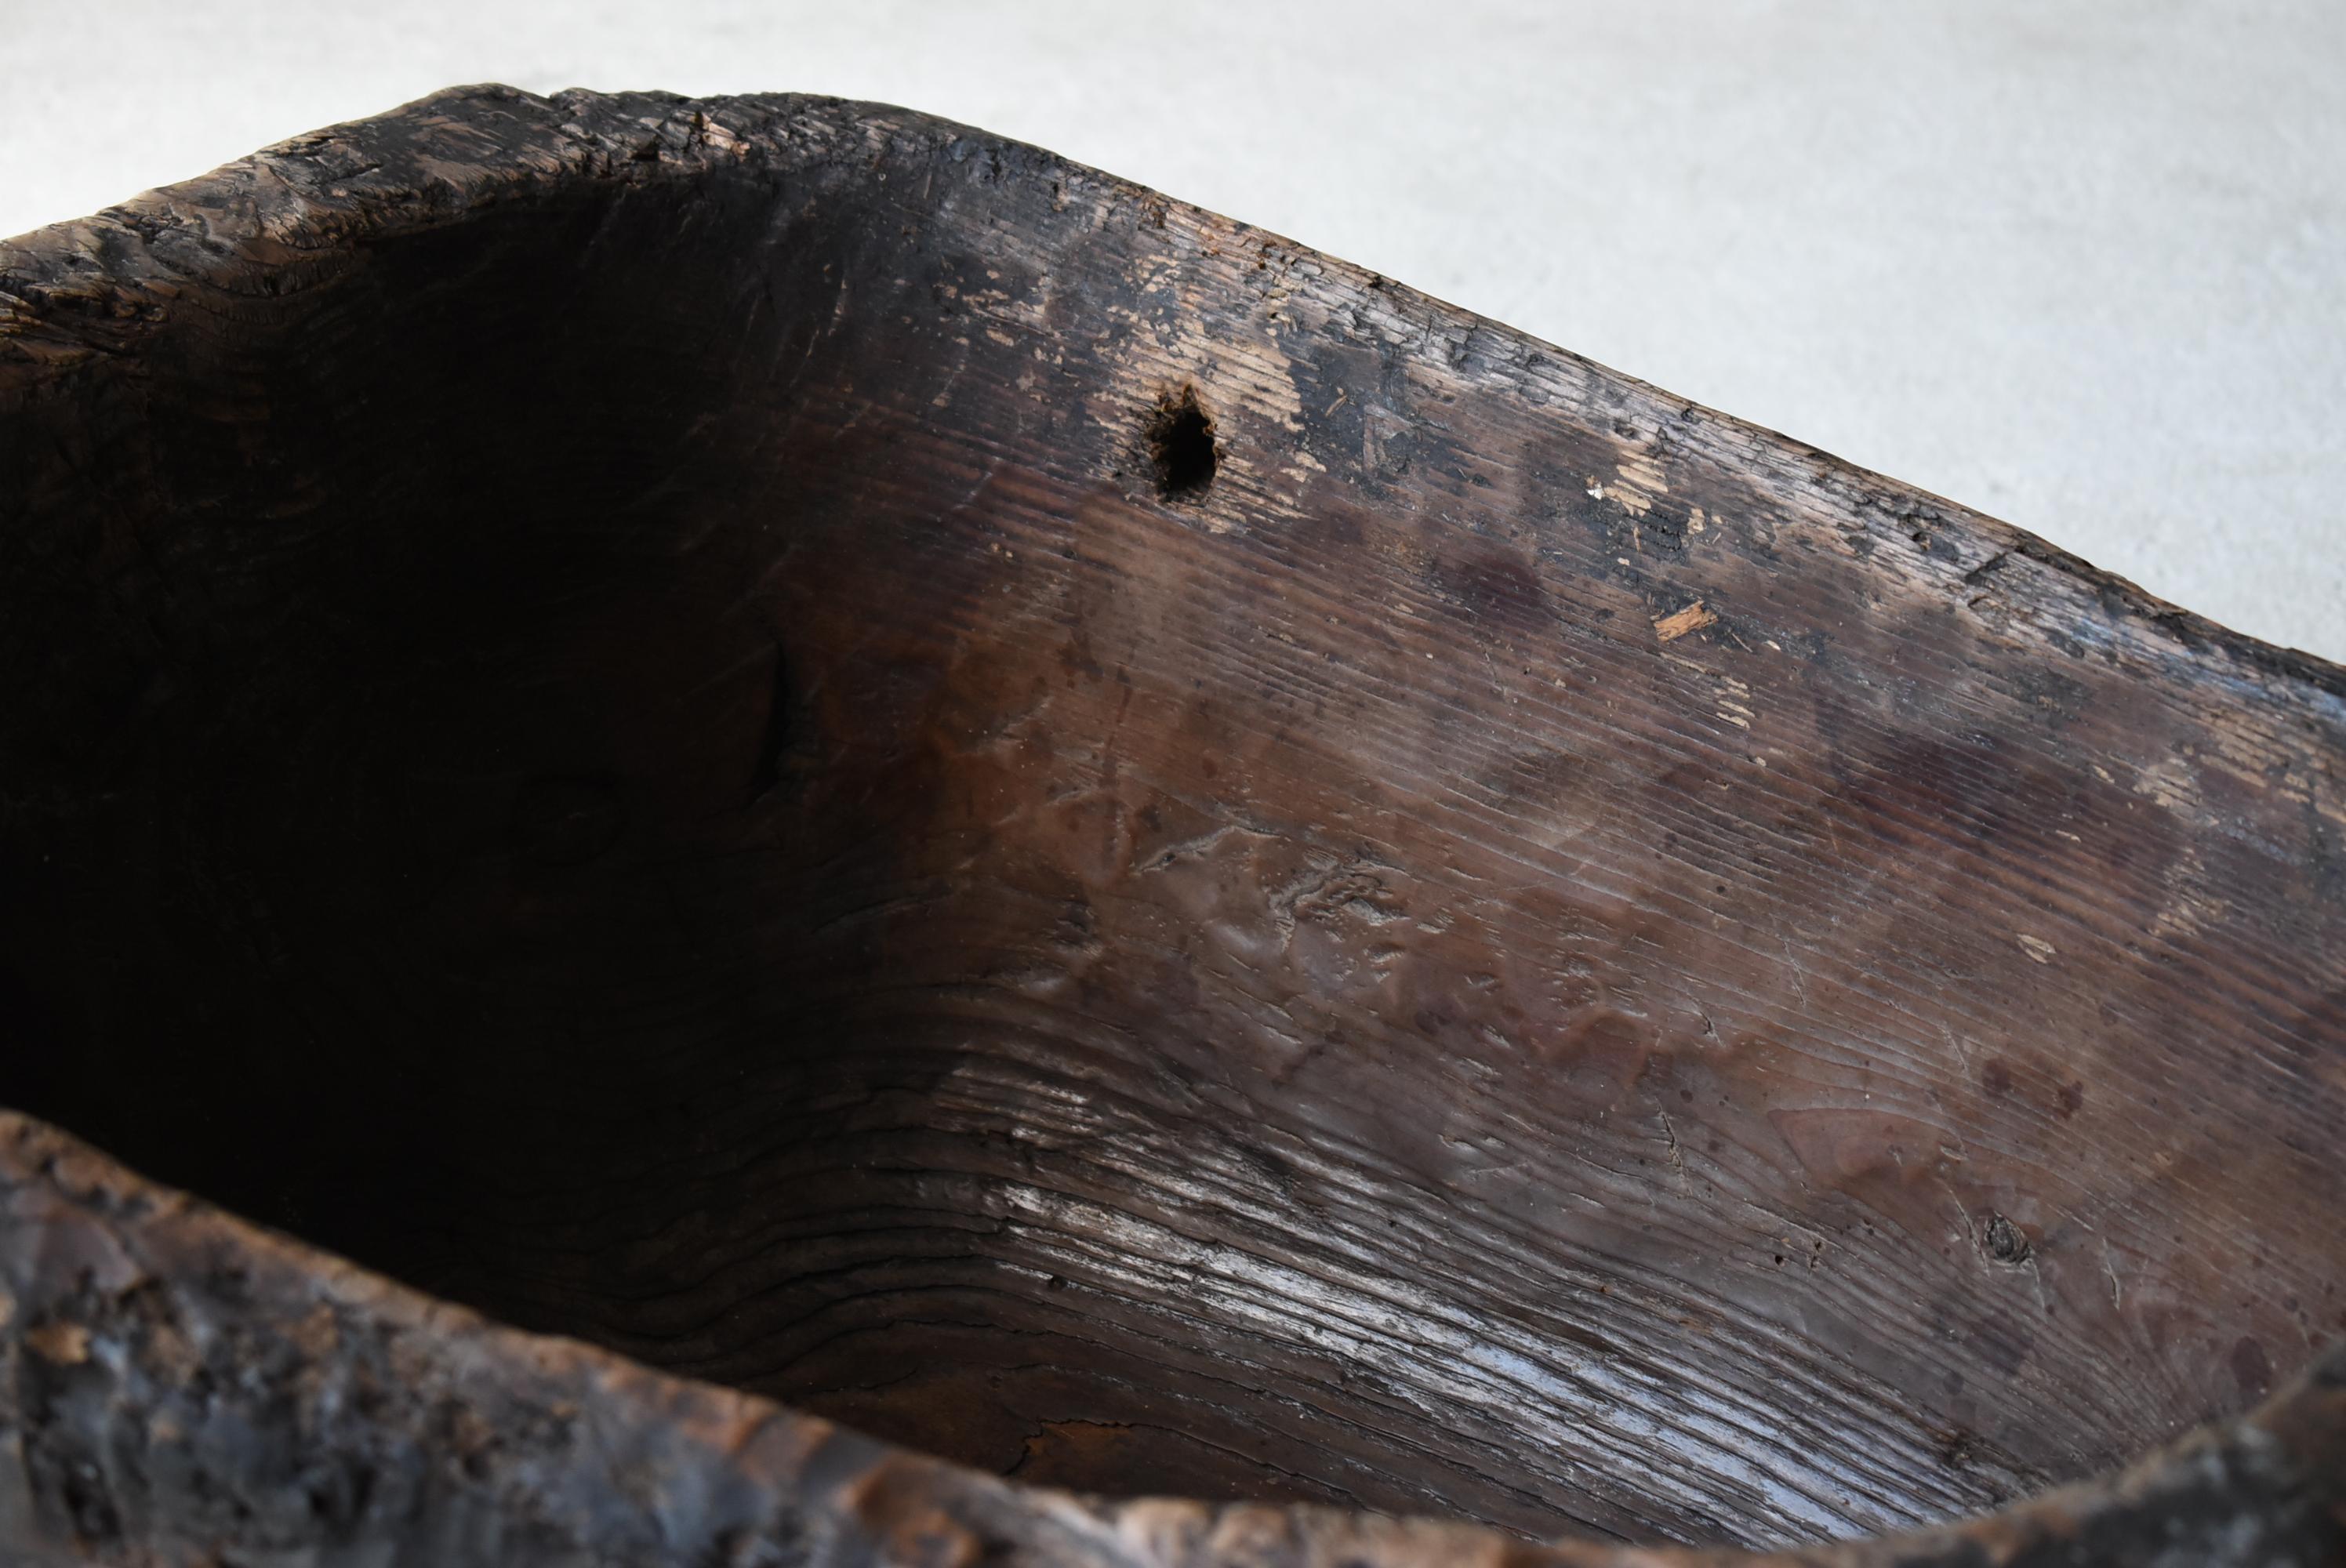 Japanese Antique Primitive Wooden Bowl 1860s-1900s / Wabi Sabi Object Mingei 2